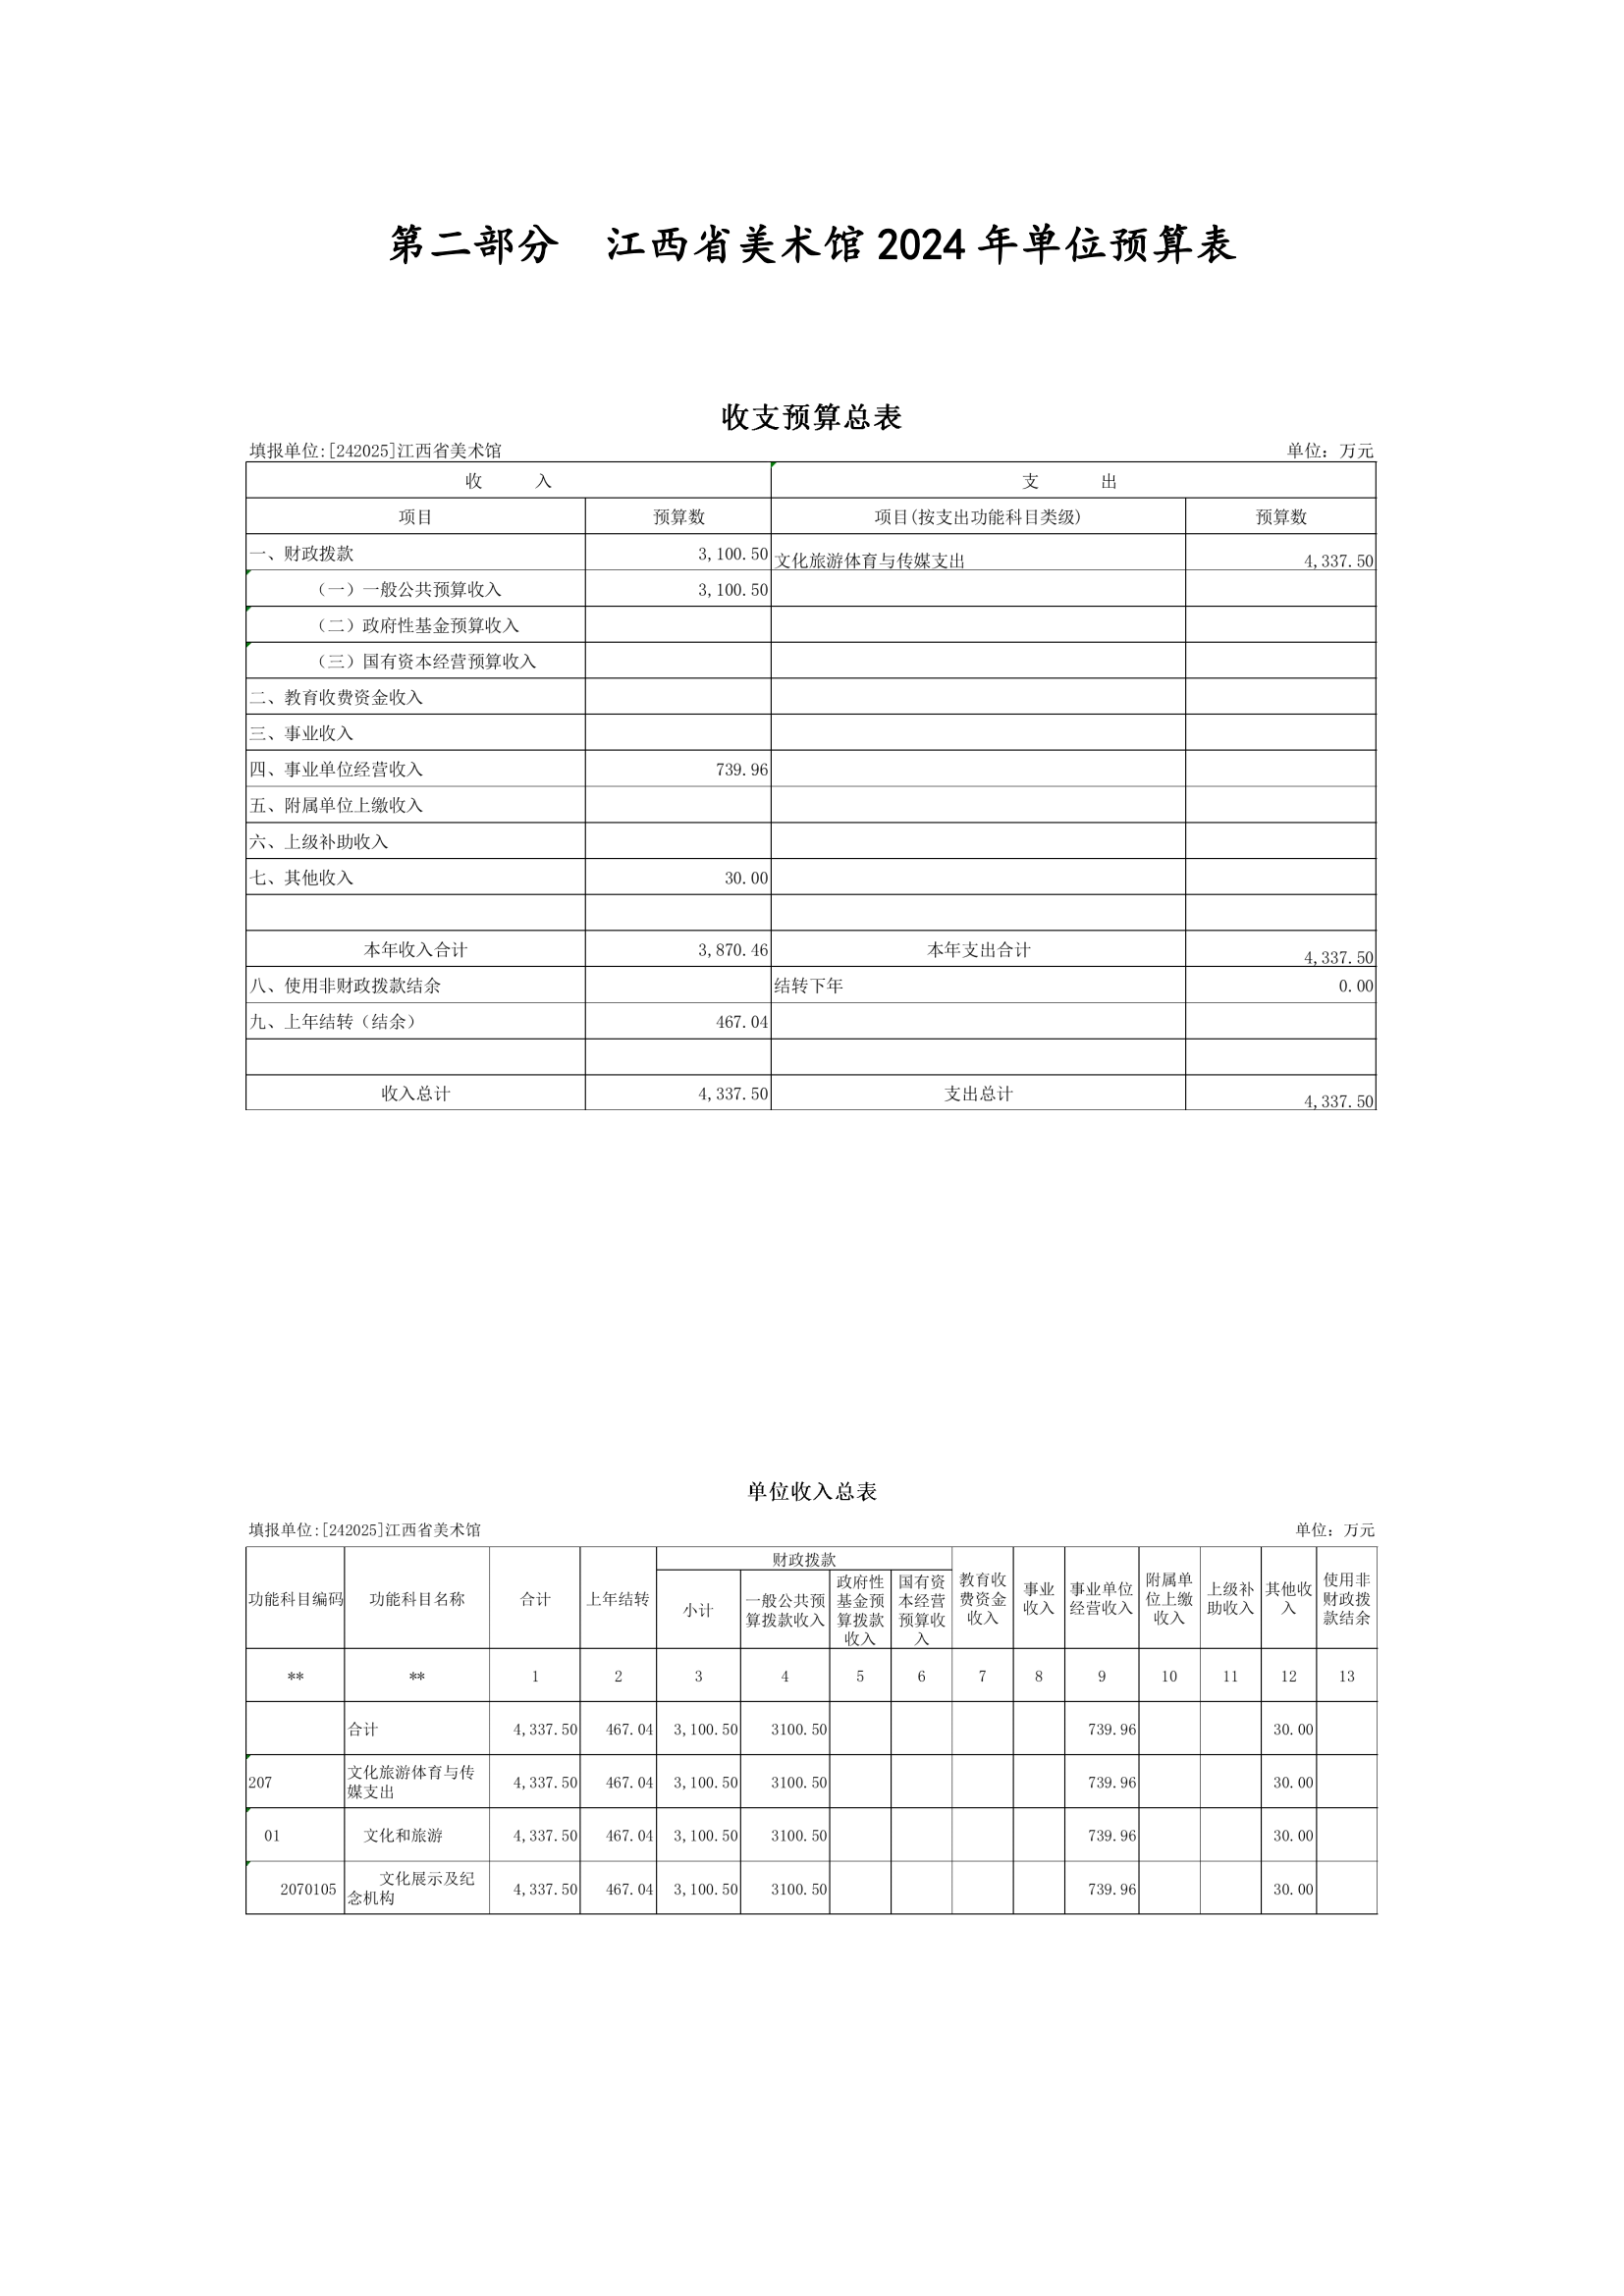 江西省美术馆2024年预算公开(正式)(1)_02.png